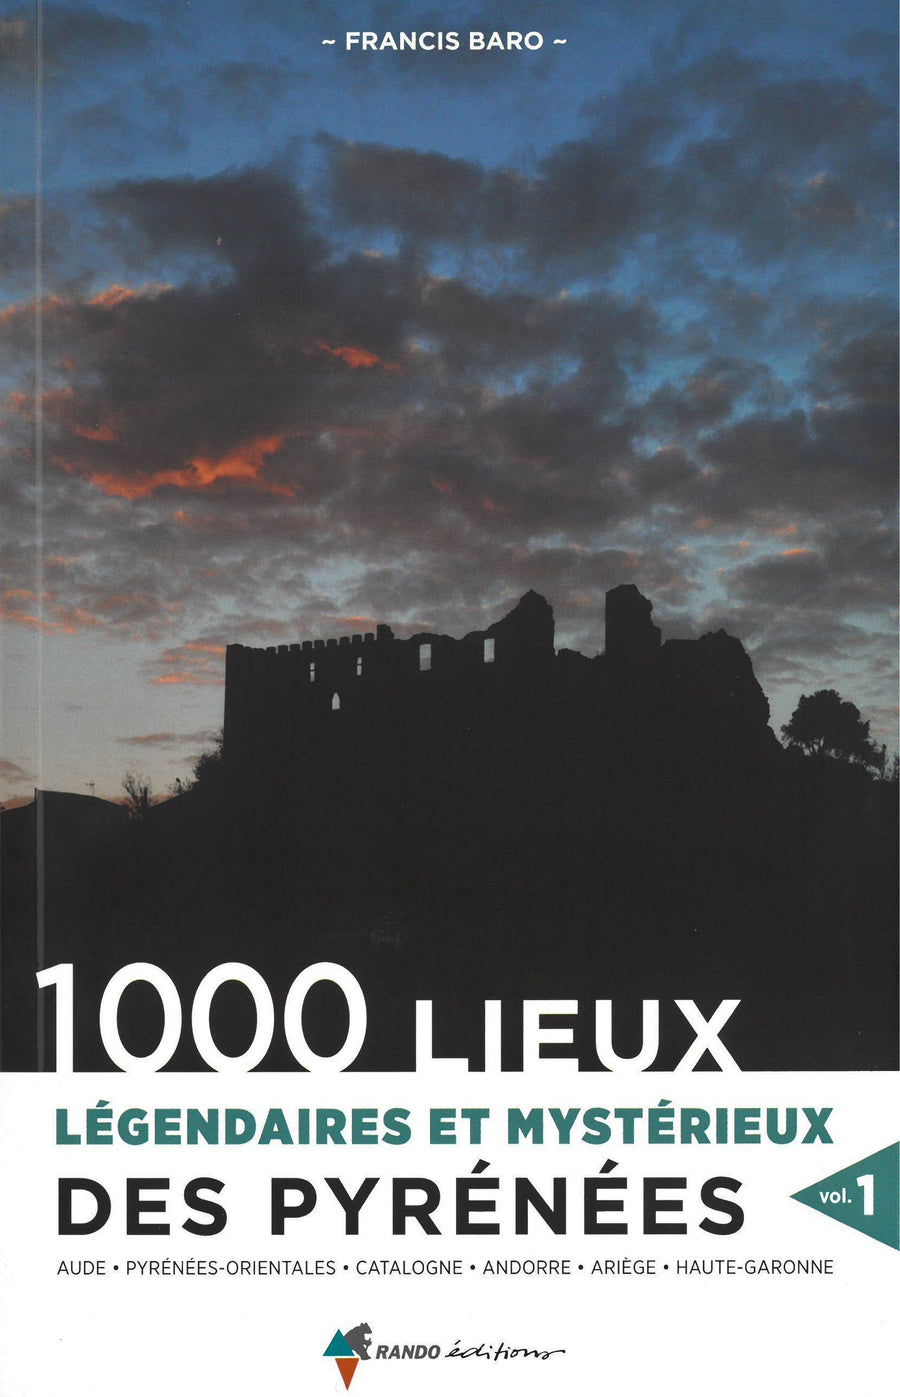 Beau livre - 1000 lieux légendaires et mystérieux des Pyrénées (volume 1) | Rando Editions beau livre Rando Editions 